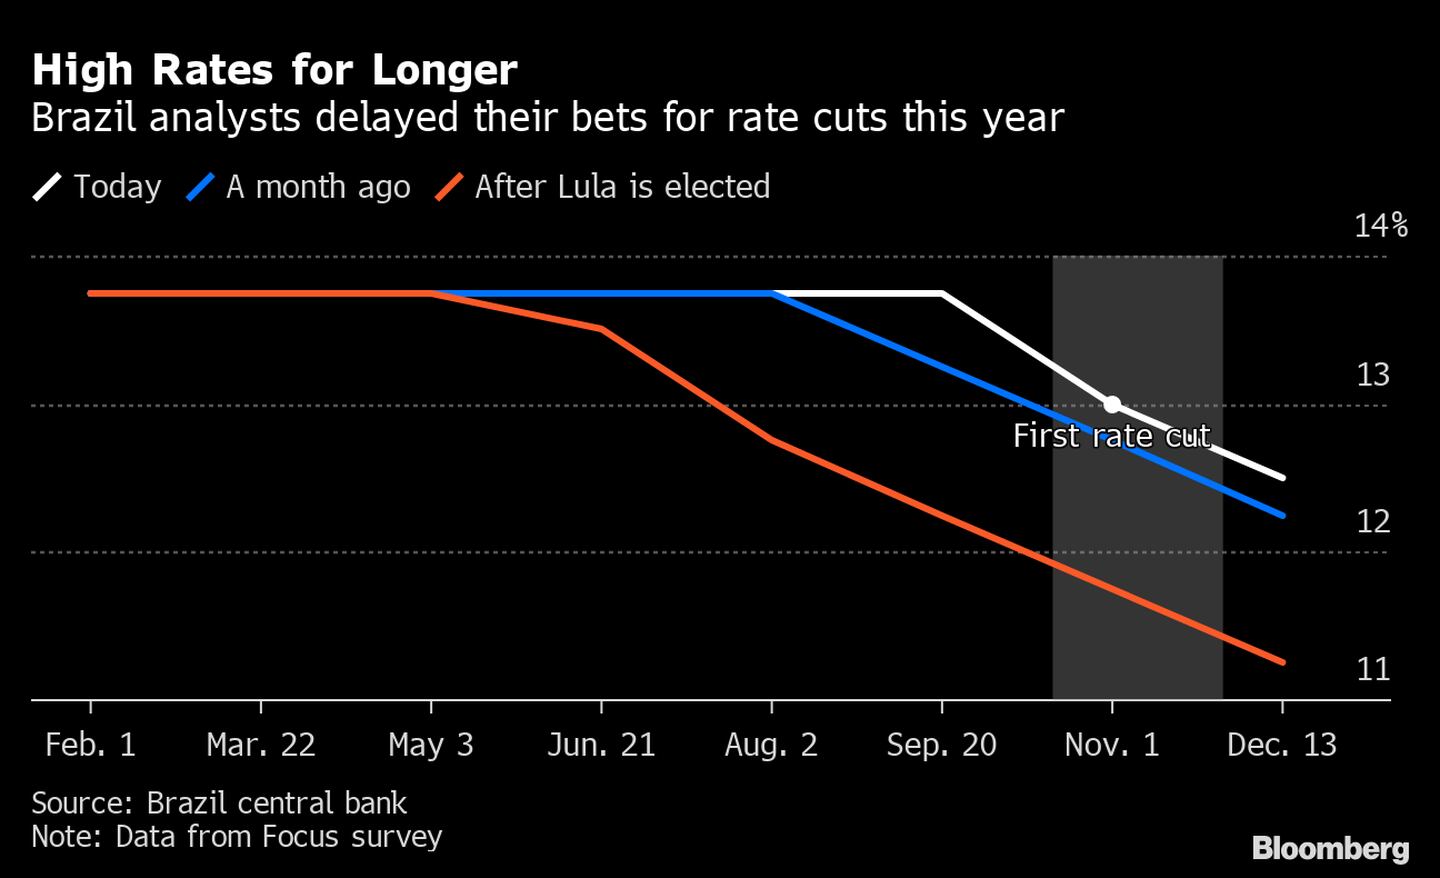 Analistas de Brasil retrasaron sus apuestas para los recortes de tasas de este año. dfd